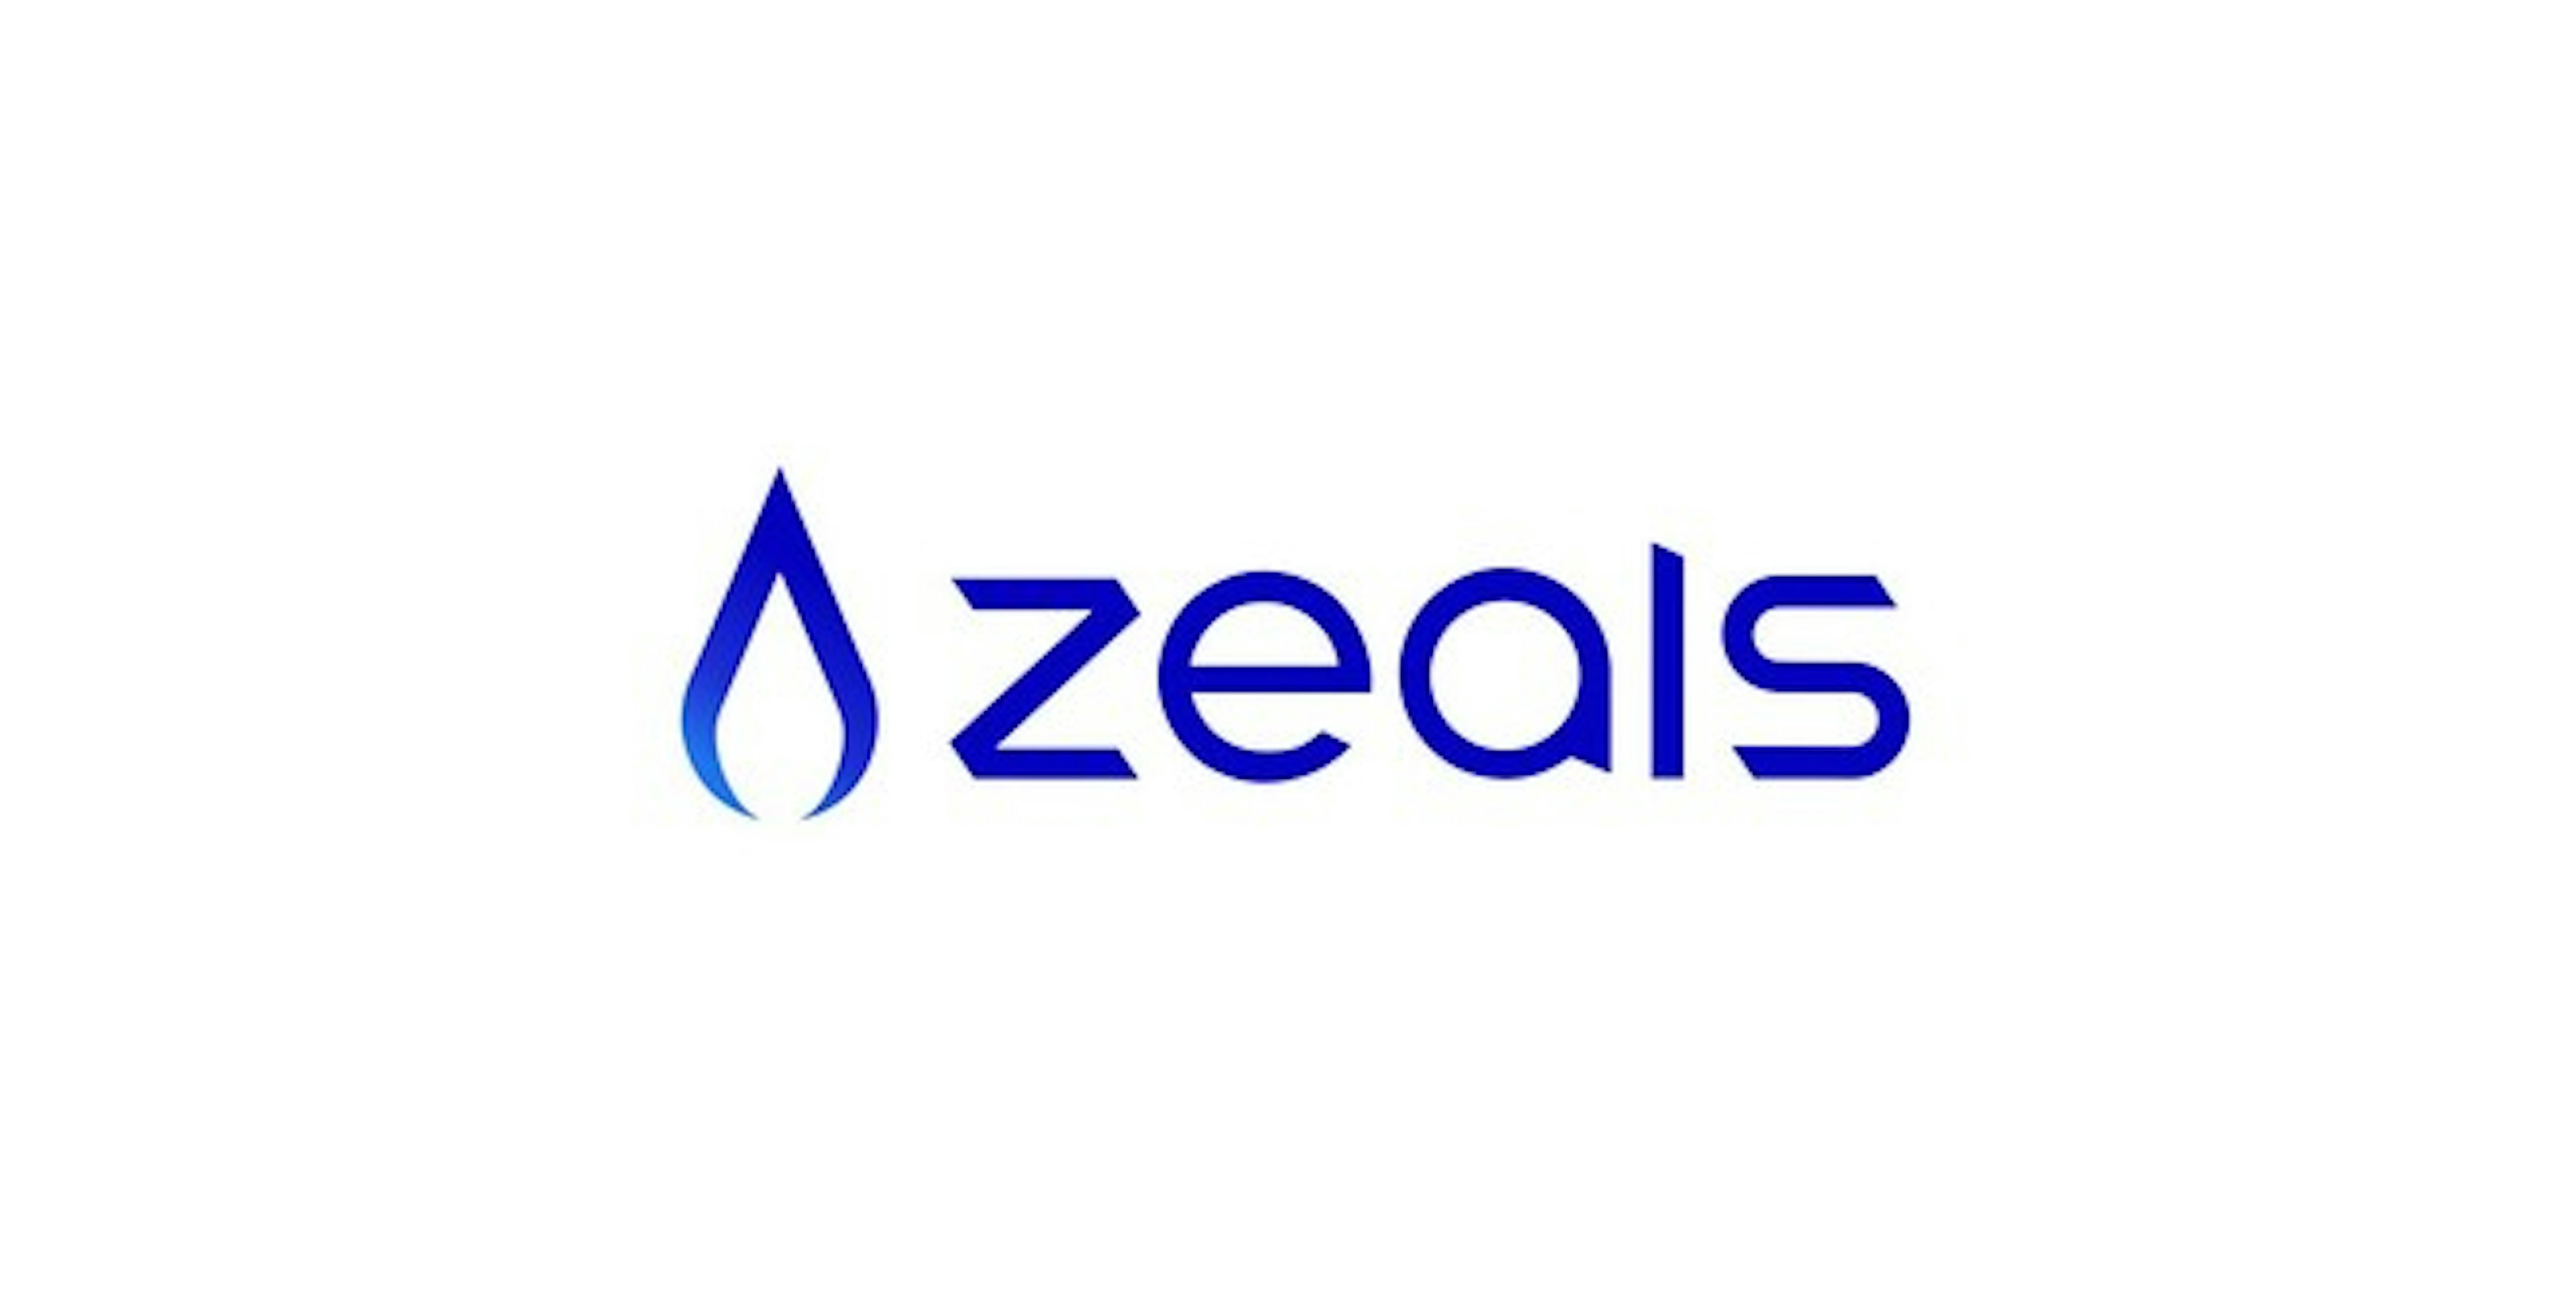 “おもてなし革命”を掲げ、チャットコマース事業を展開する、ZEALSに追加出資